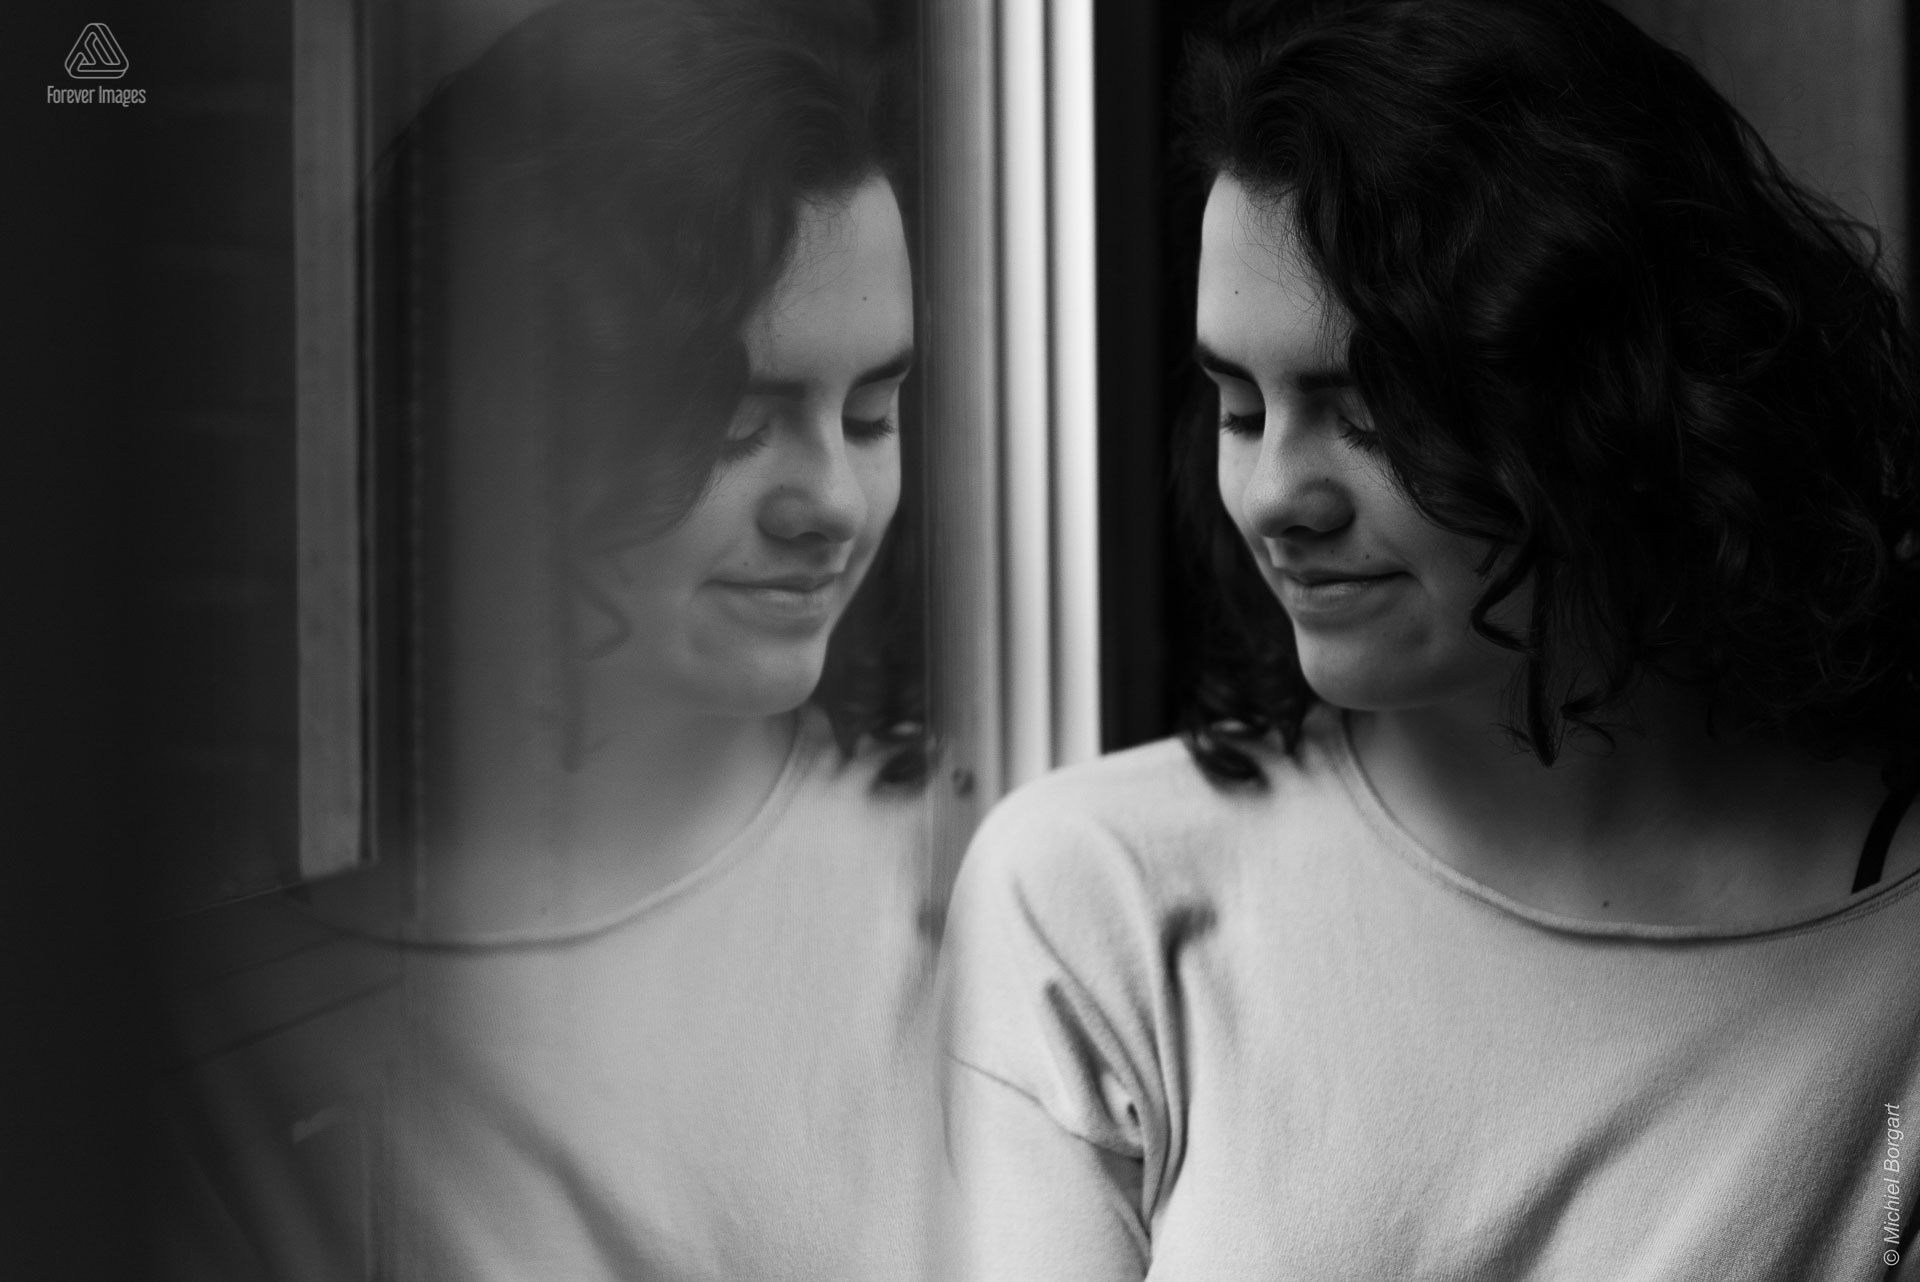 Portretfoto zwart-wit jonge dame kijkt naar beneden met reflectie in raam | Tessa Holscher | Portretfotograaf Michiel Borgart - Forever Images.